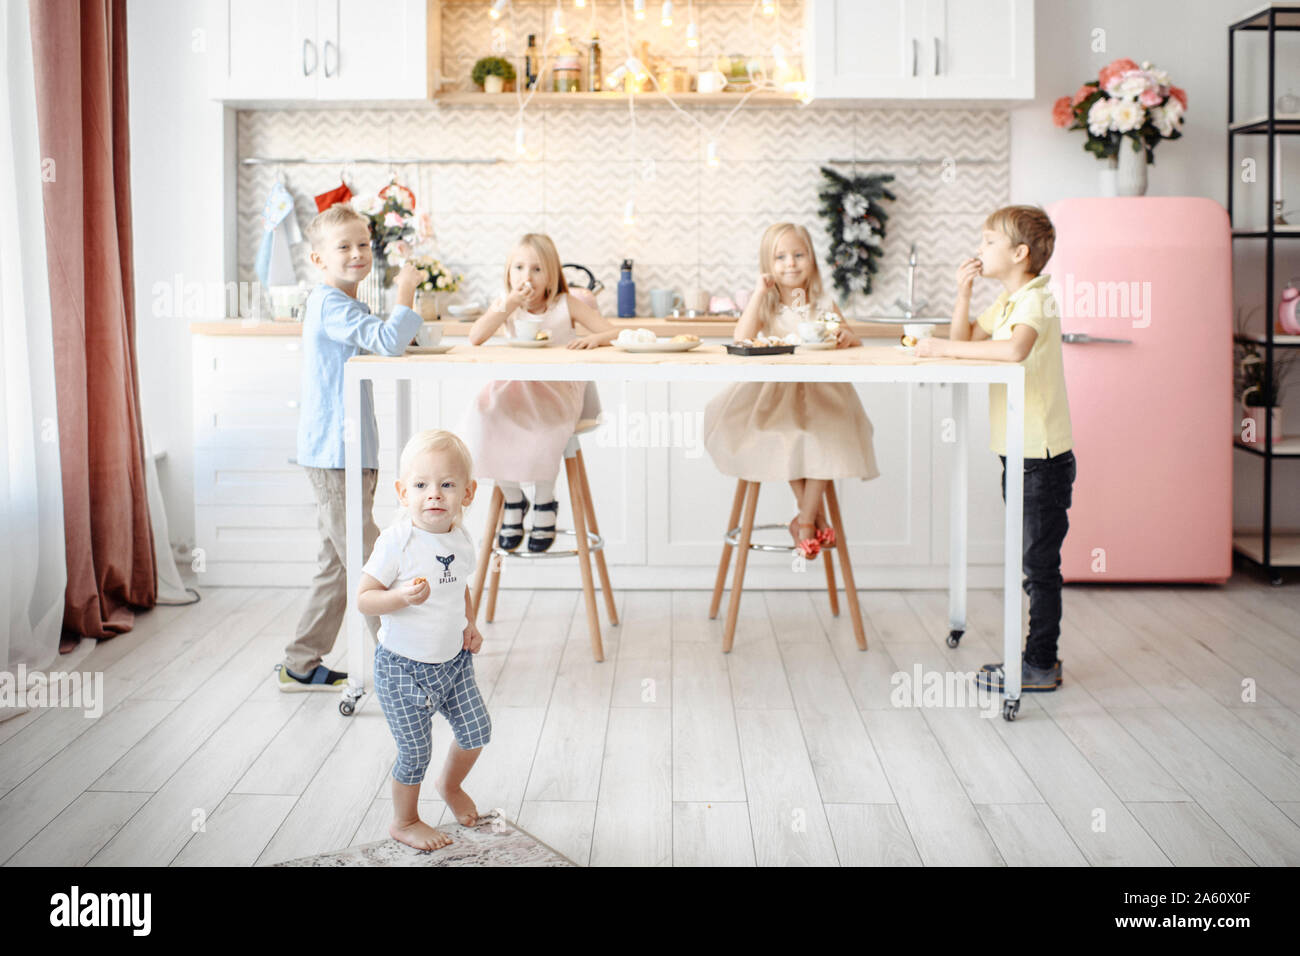 Fivechildren mangiare i cookie in cucina Foto Stock